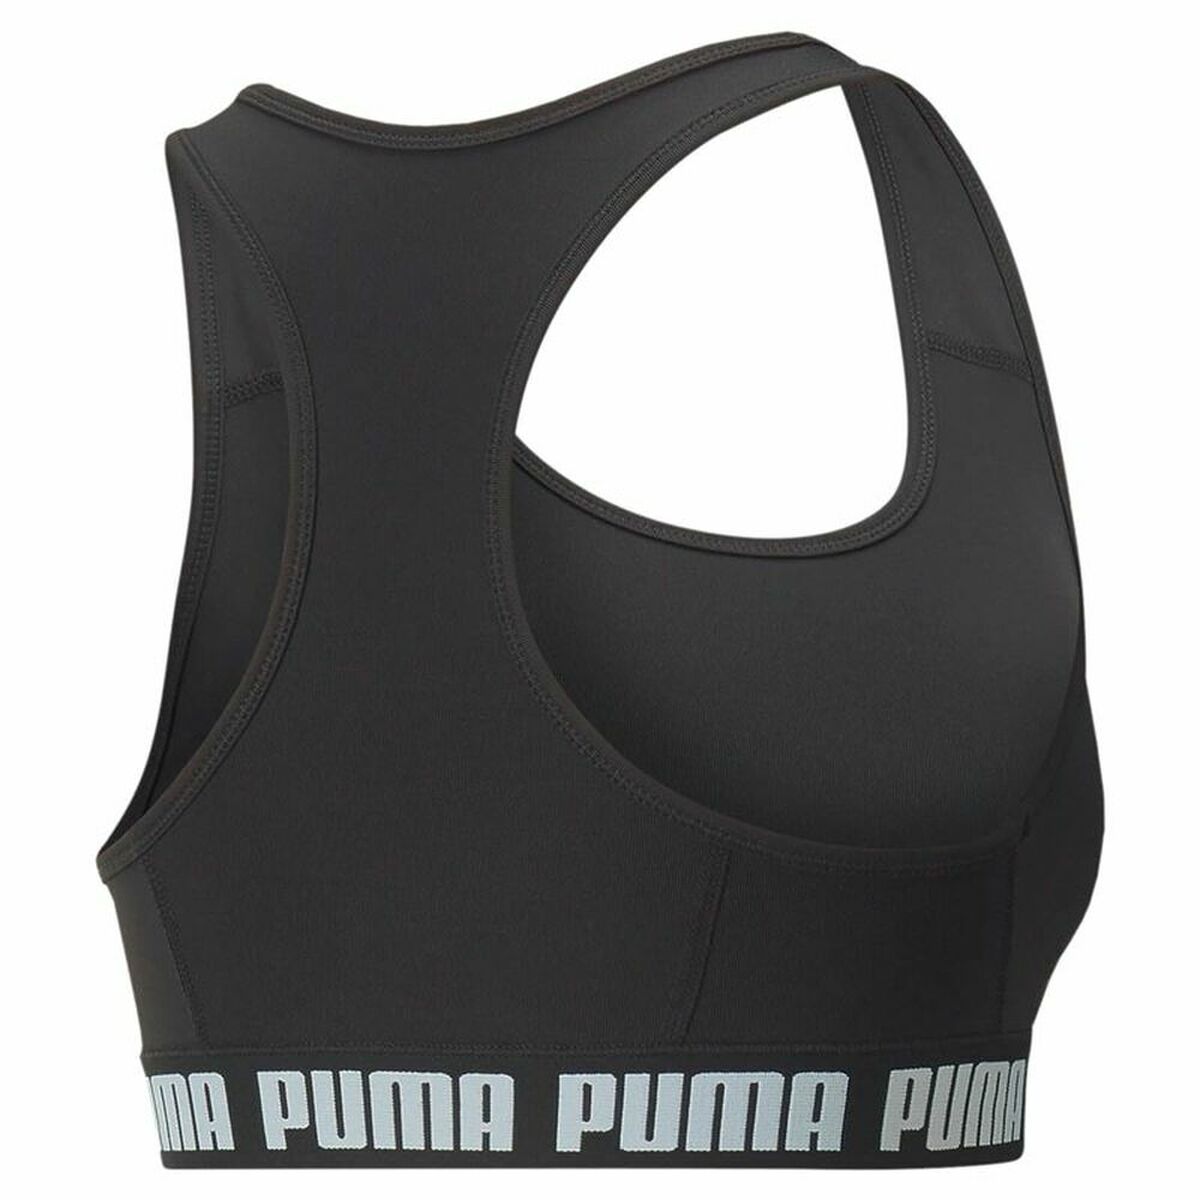 Soutien-gorge de Sport Puma Mid - Strong Impact Noir